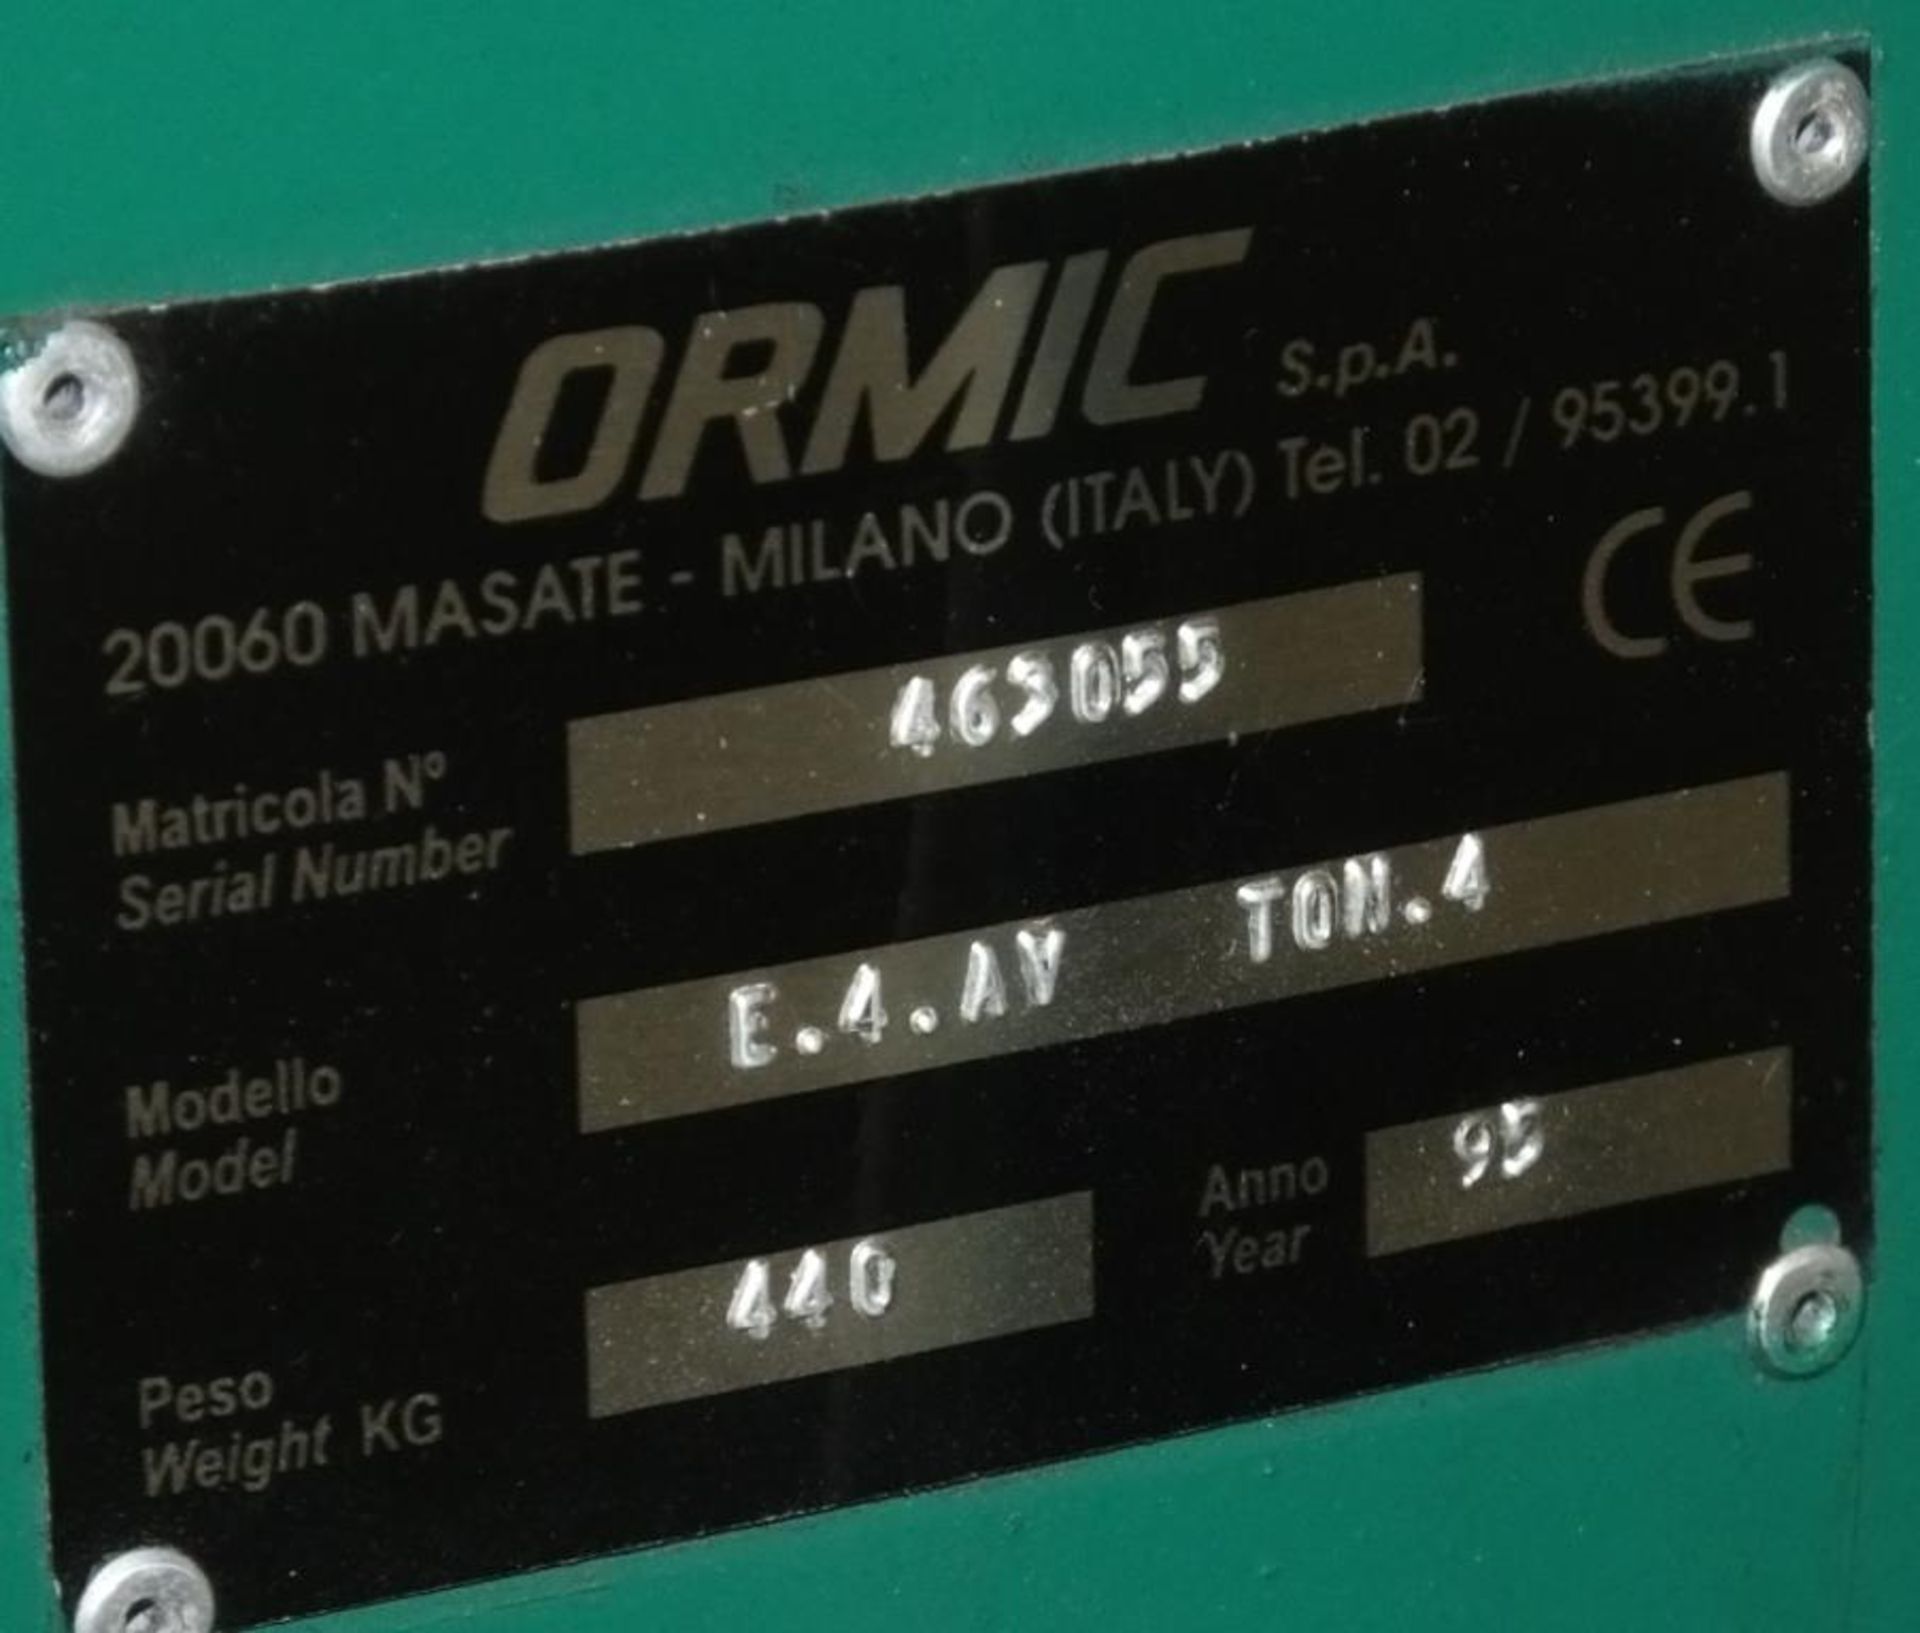 Ormic Waste Hydraulic Baler Model E.4 AV YOM.4 - 440V - serial 463055 - £5+ Vat Loading Ch - Image 5 of 5